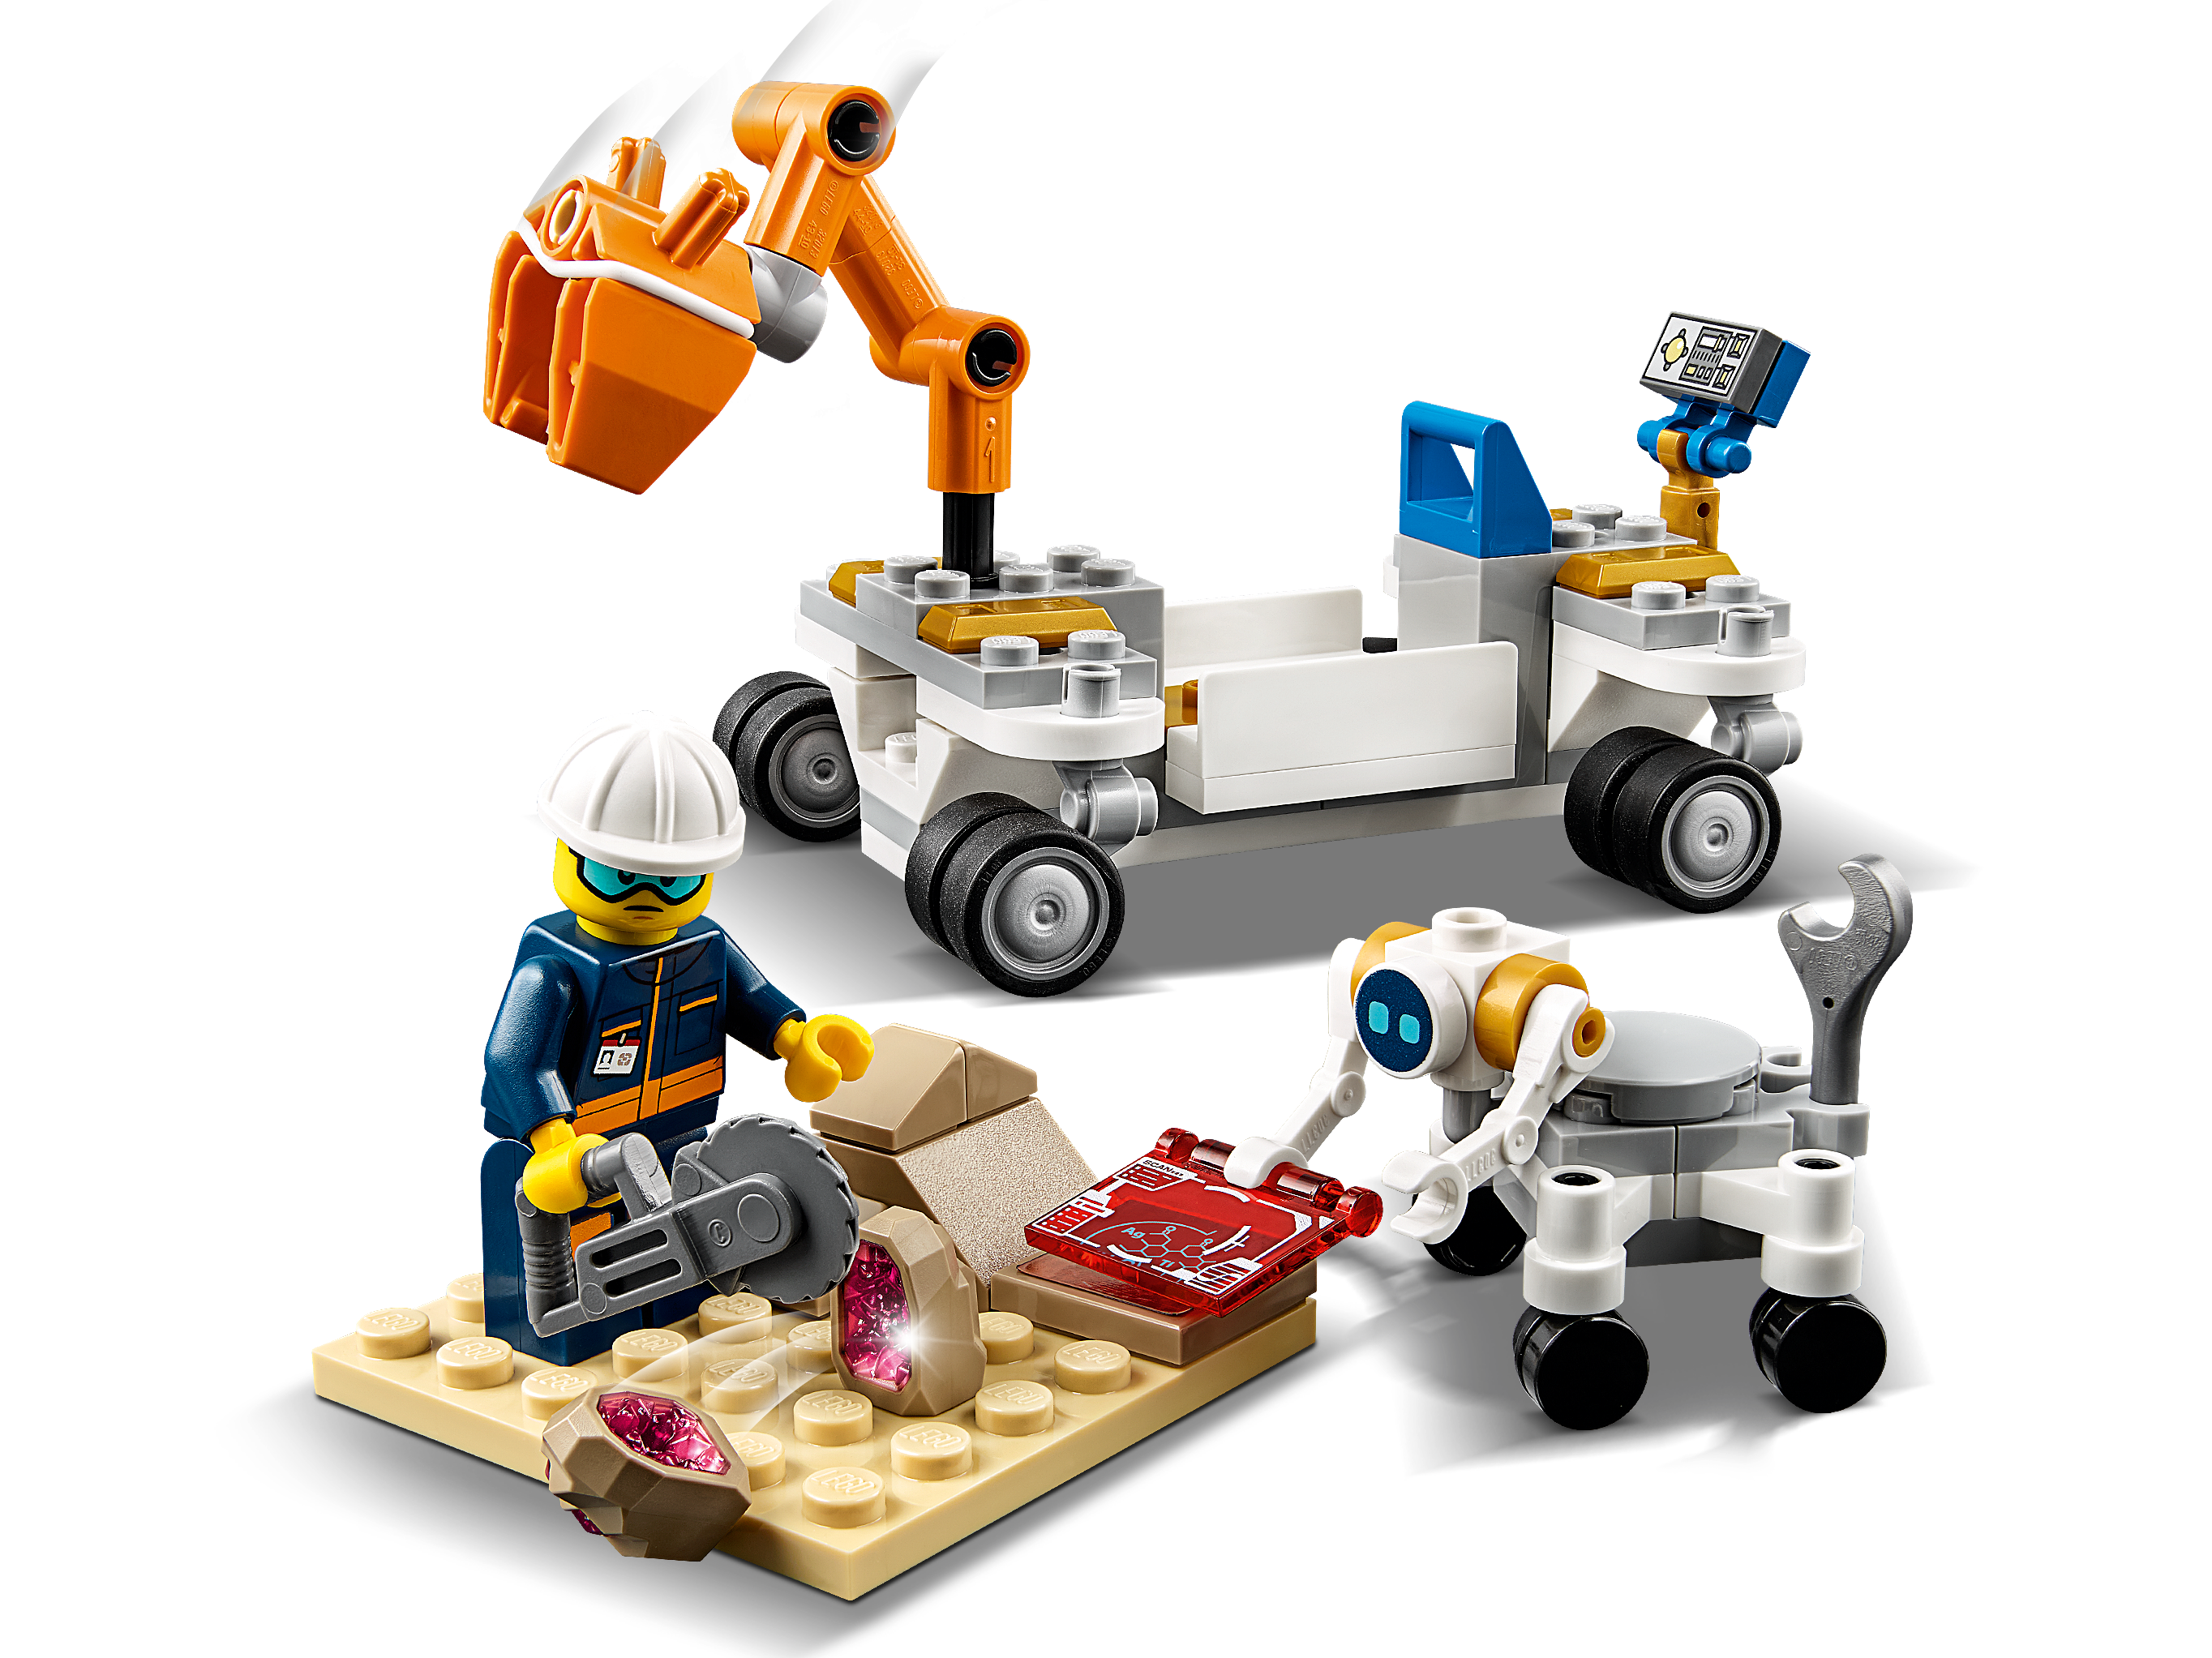 LEGO City 7280 – Rak gata och korsning